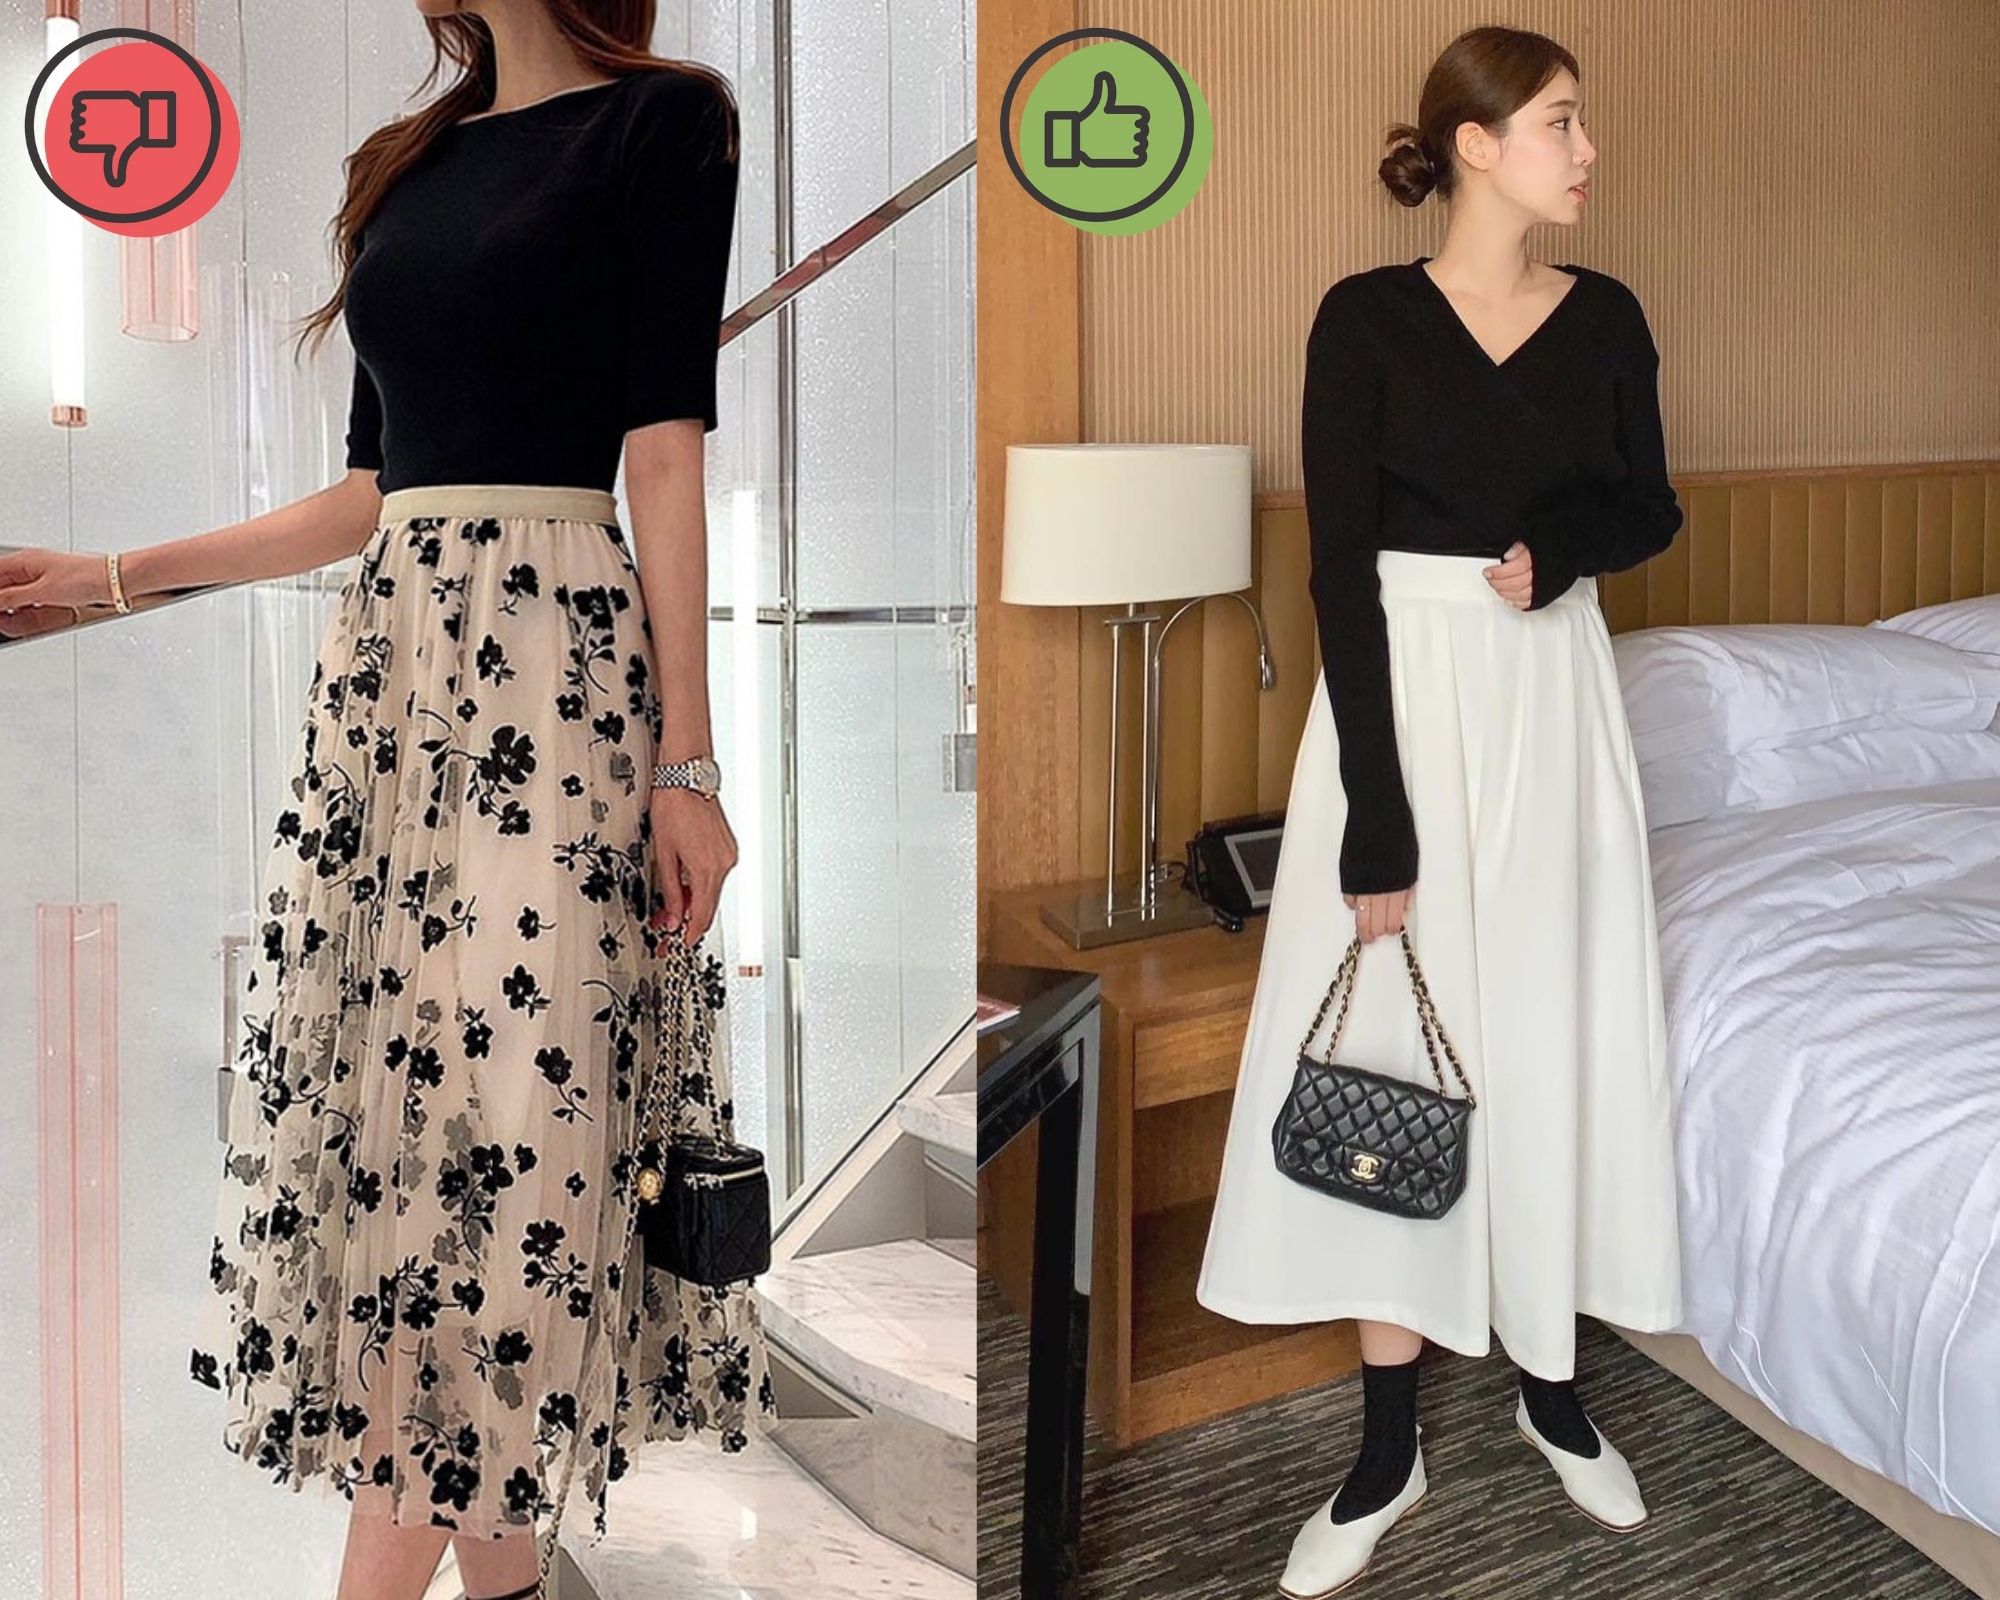 Chân váy tầng from dài Ceci Skirt from chuẩn dễ mix có 2 màu trắng và đen  chất liệu vải tằm xước có lót trong lưng thun | Shopee Việt Nam